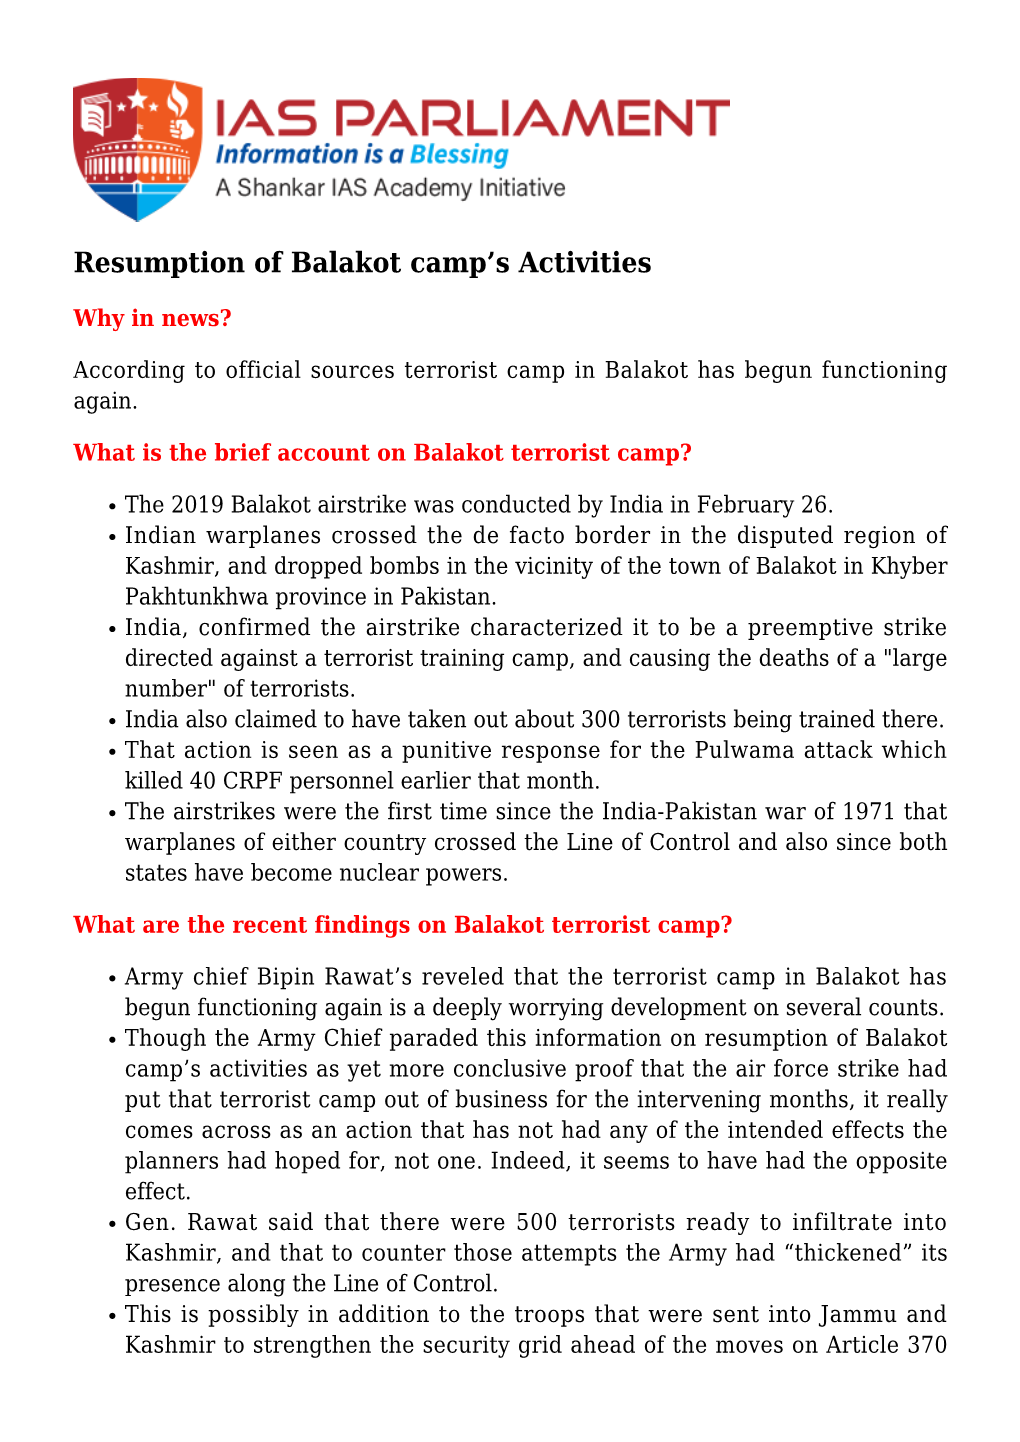 Resumption of Balakot Camp's Activities